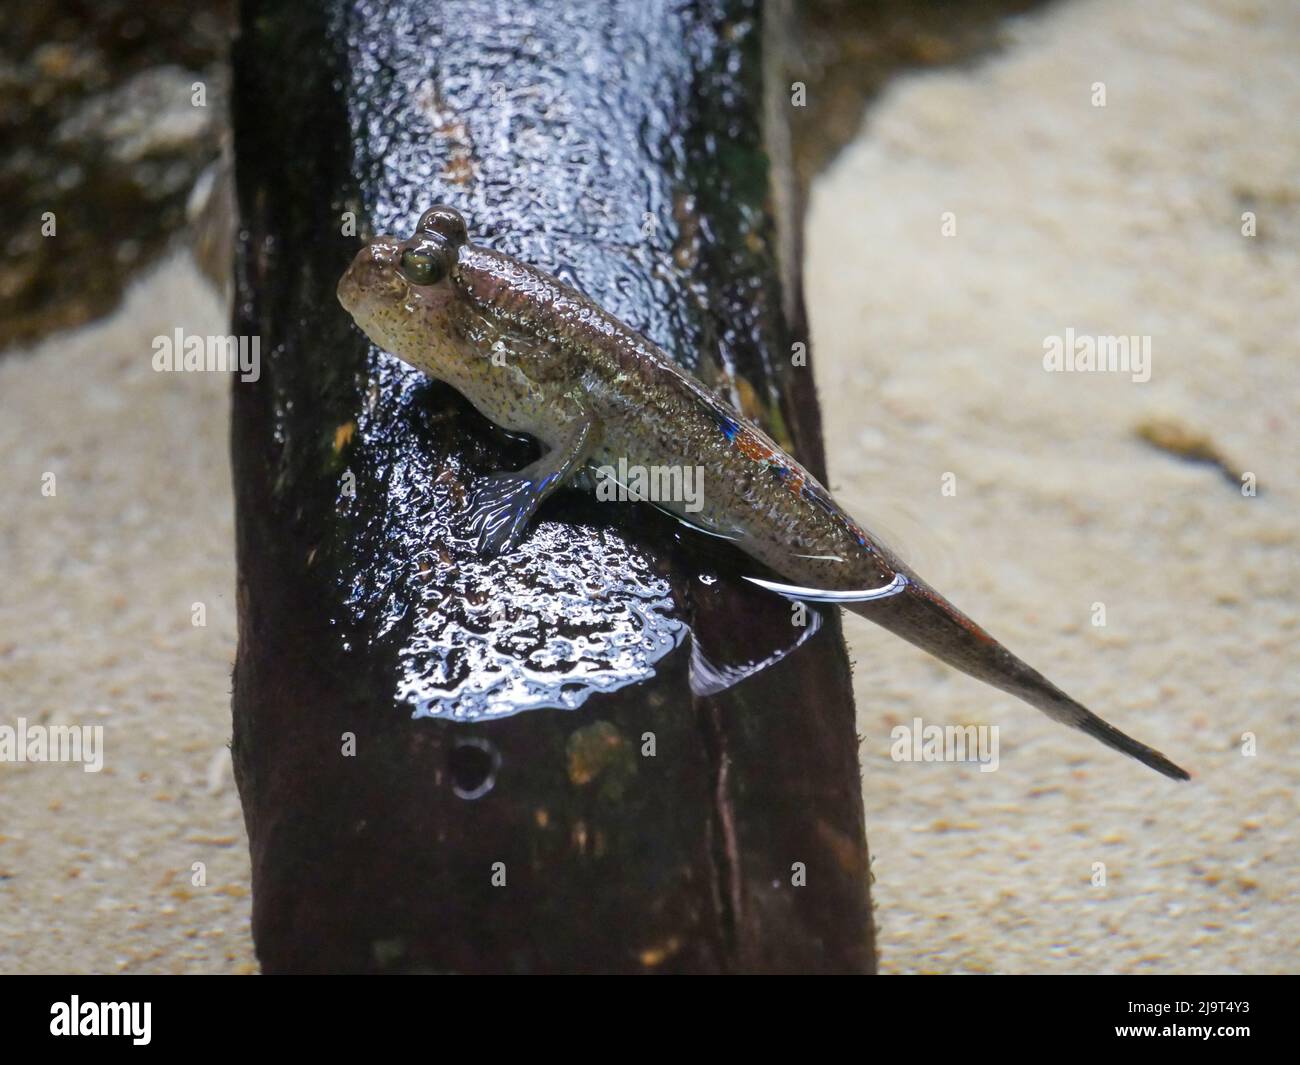 I pesci mudskipper sono pesci anfibi. Sono noti per il loro aspetto inusuale e la loro capacità di sopravvivere sia dentro che fuori dall'acqua. Foto Stock